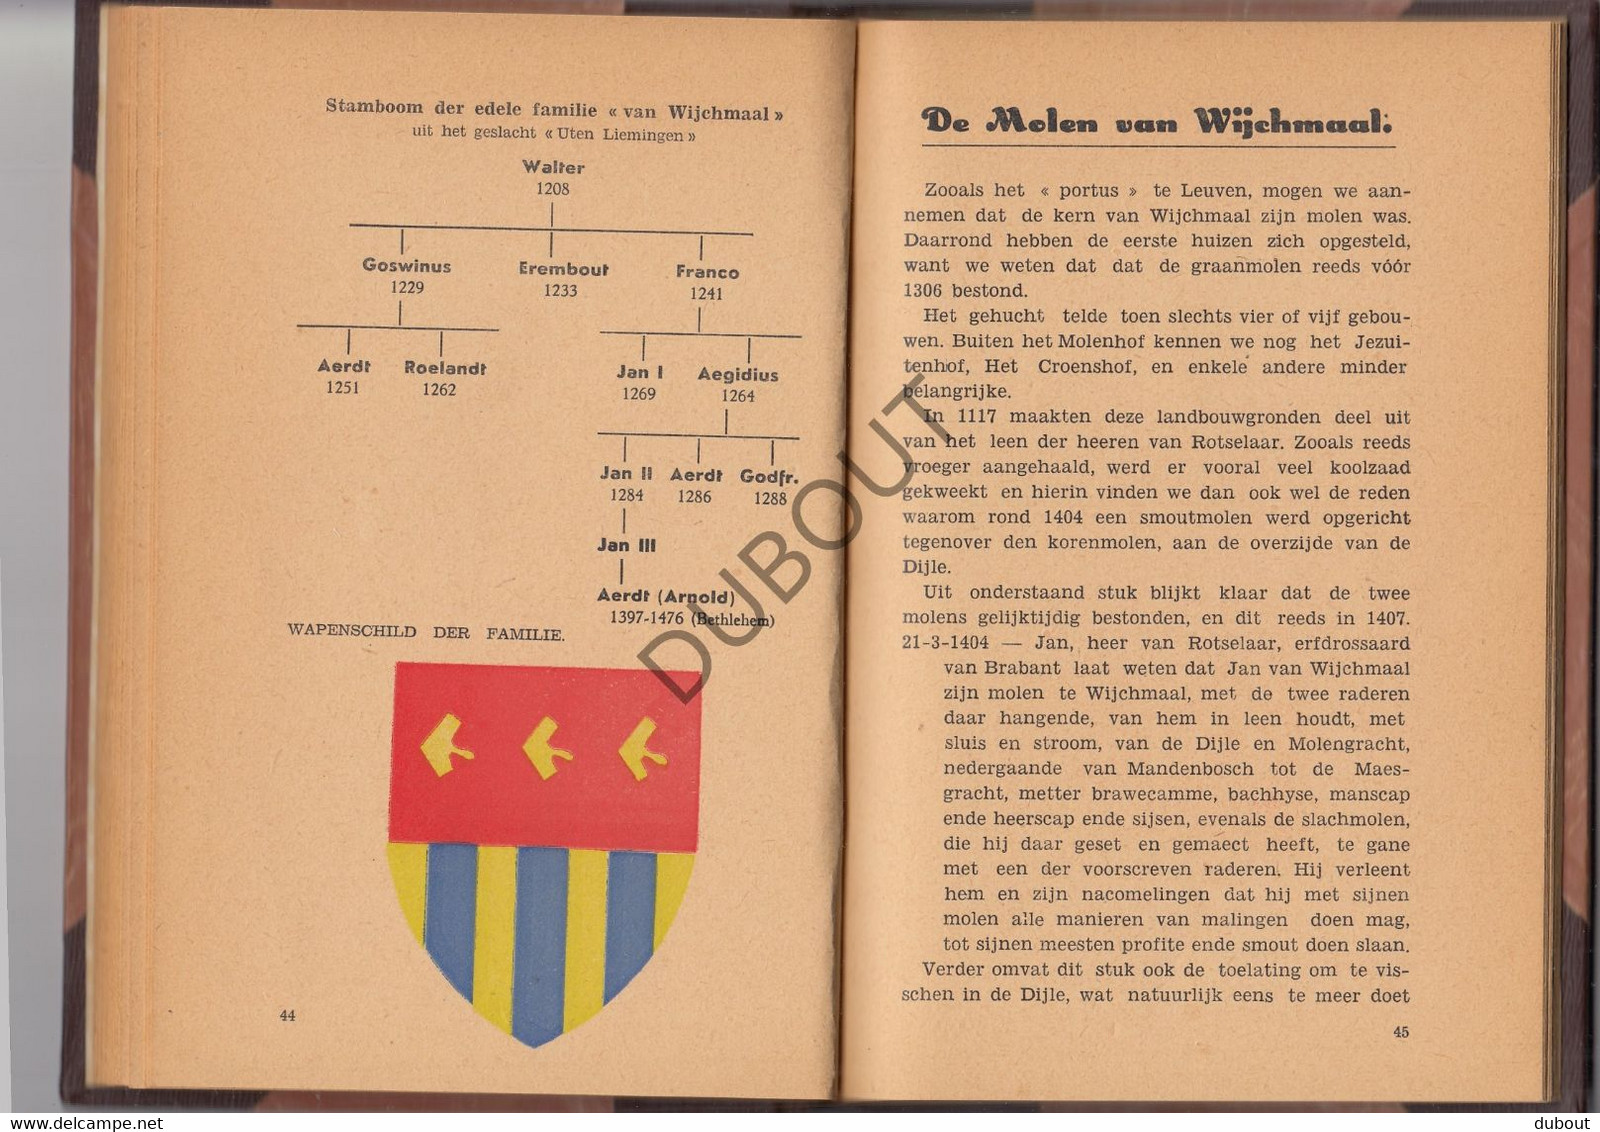 WIJCHMAAL - Geschiedenis van Wijchmaal van 1200 tot nu - M. Rouwet, Druk Jacobs , Park Heverlee, 1946  (V895)